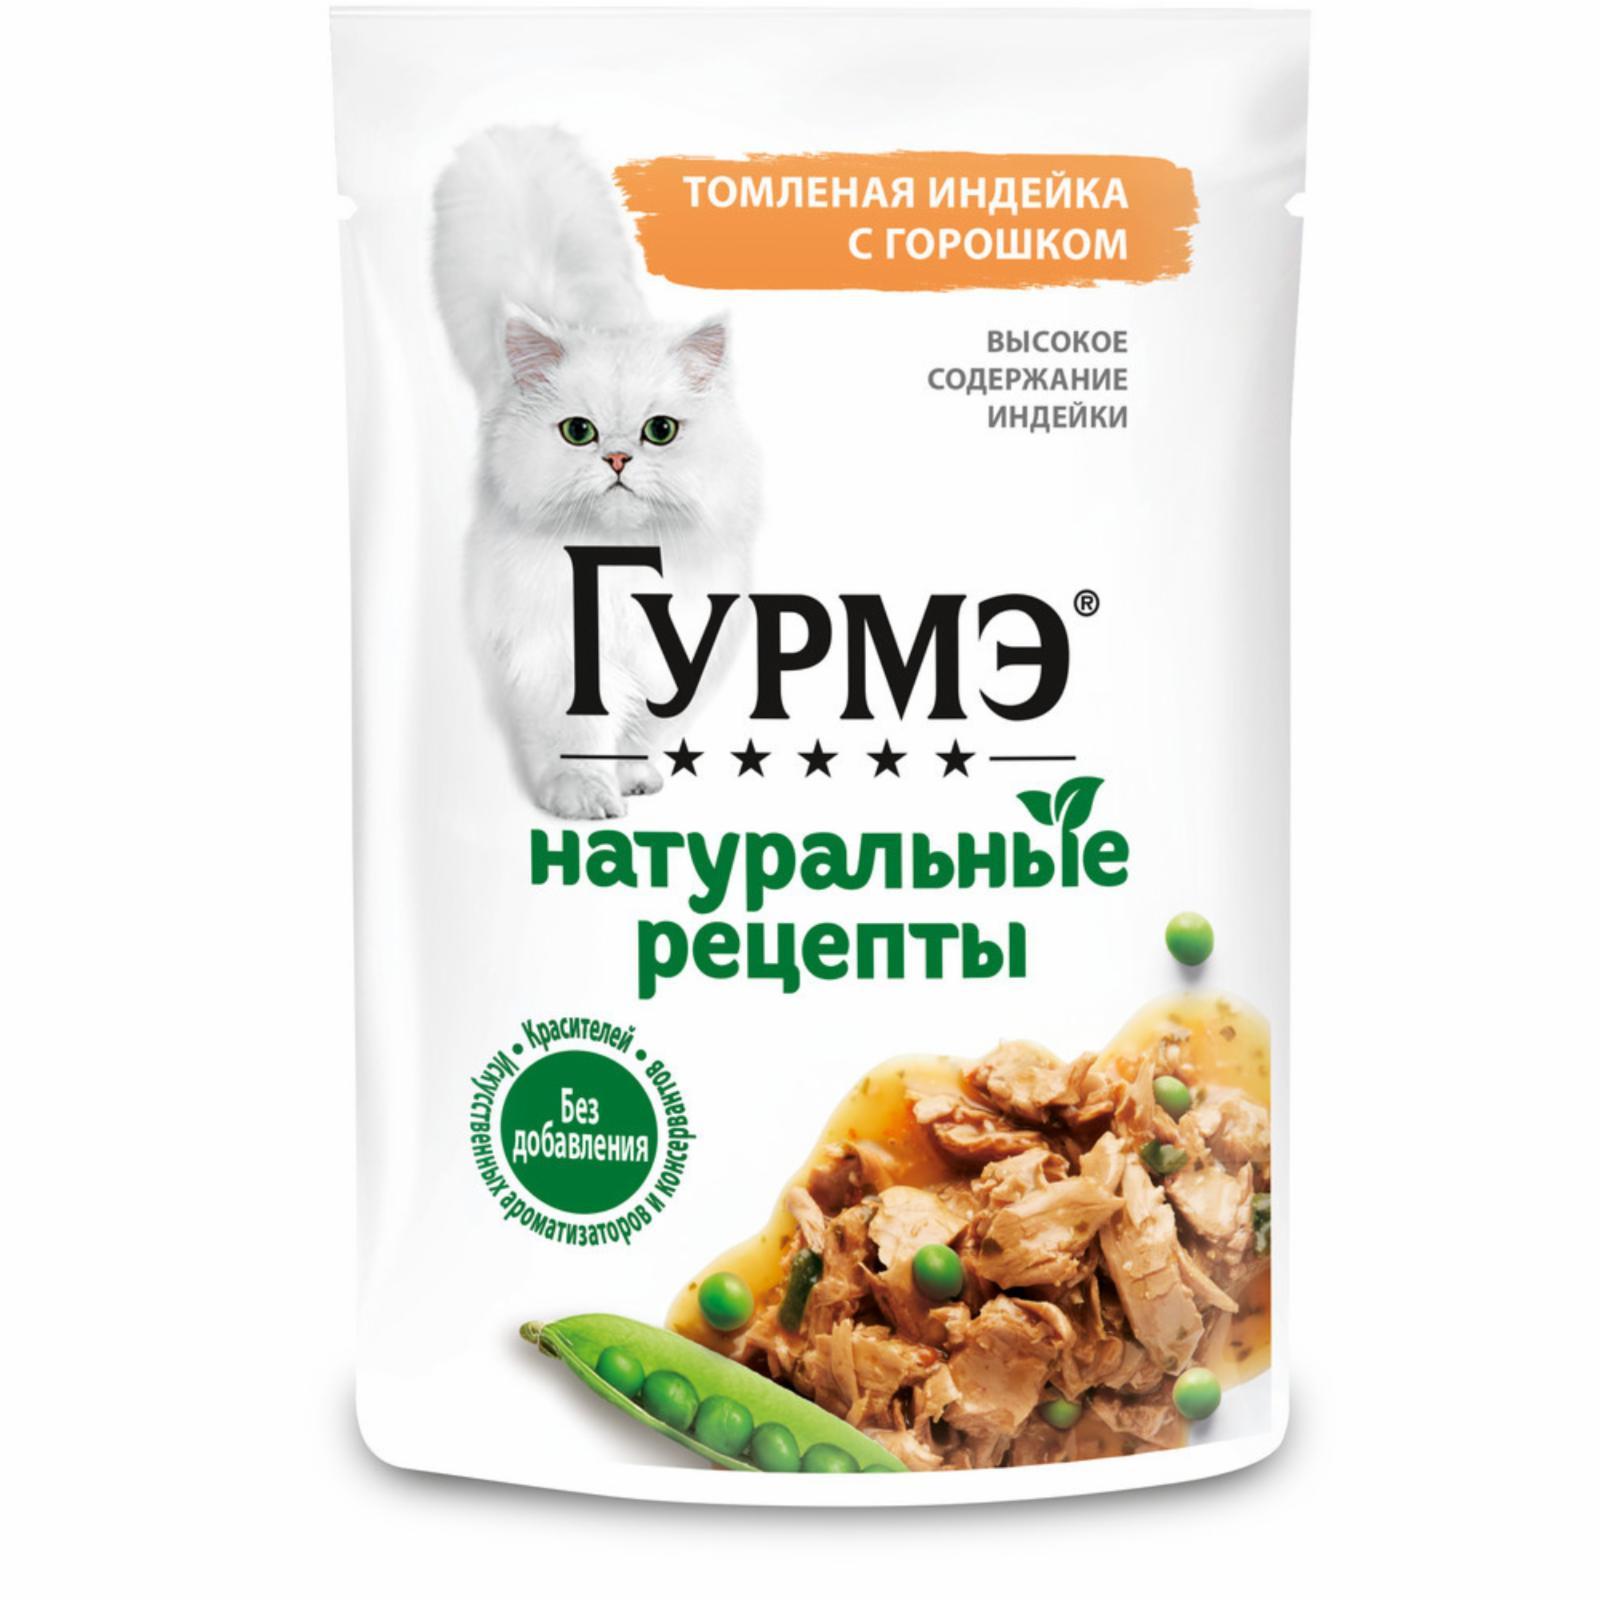 Влажный корм Натуральные рецепты для кошек, томленая индейка с горошком. 75 г